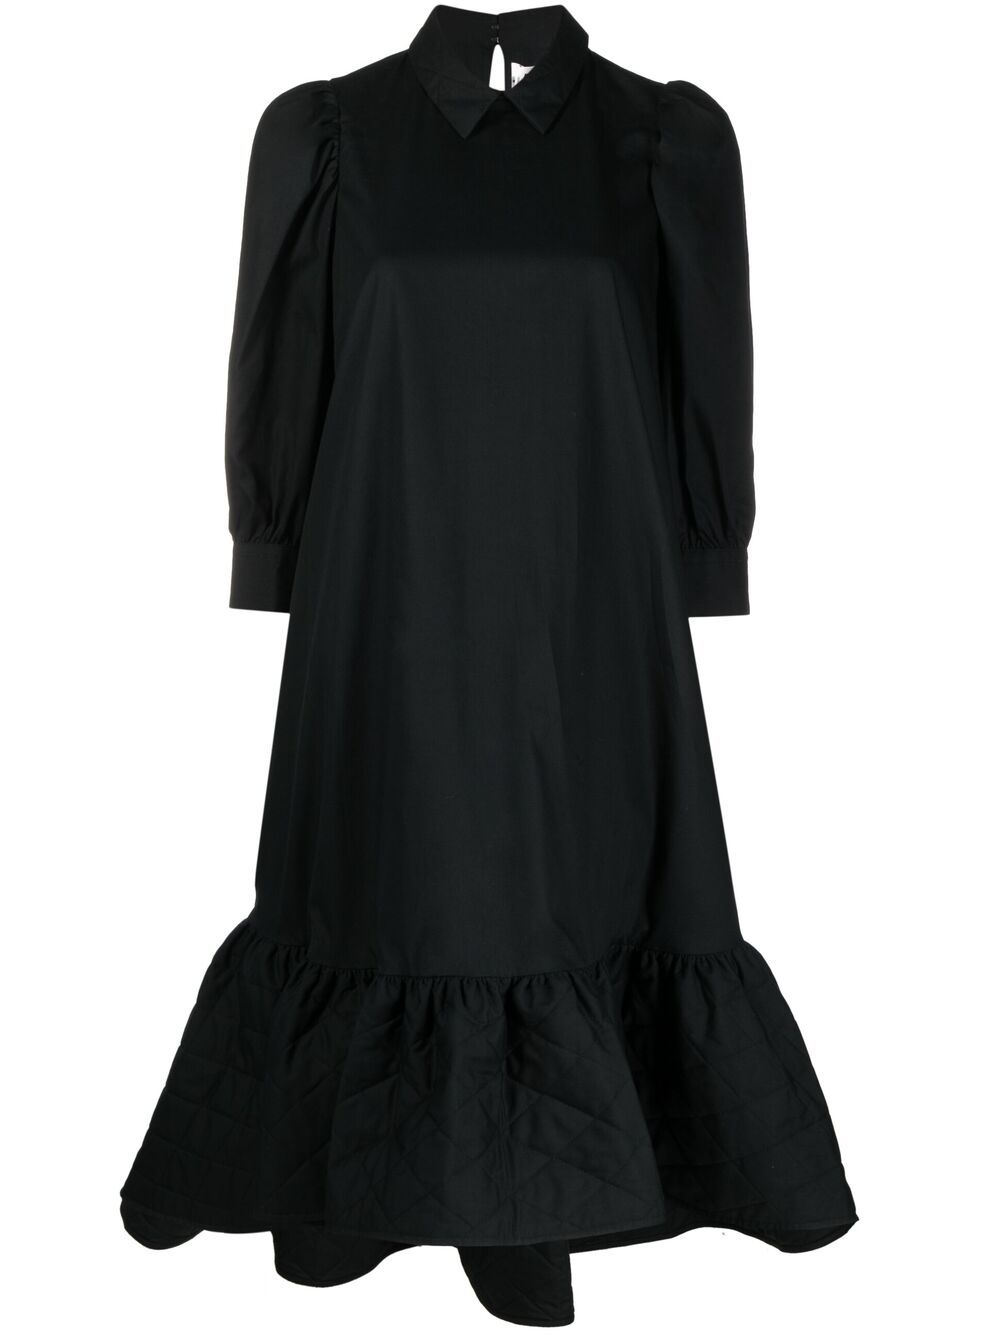 фото Comme des garçons noir kei ninomiya платье-рубашка с расклешенным подолом